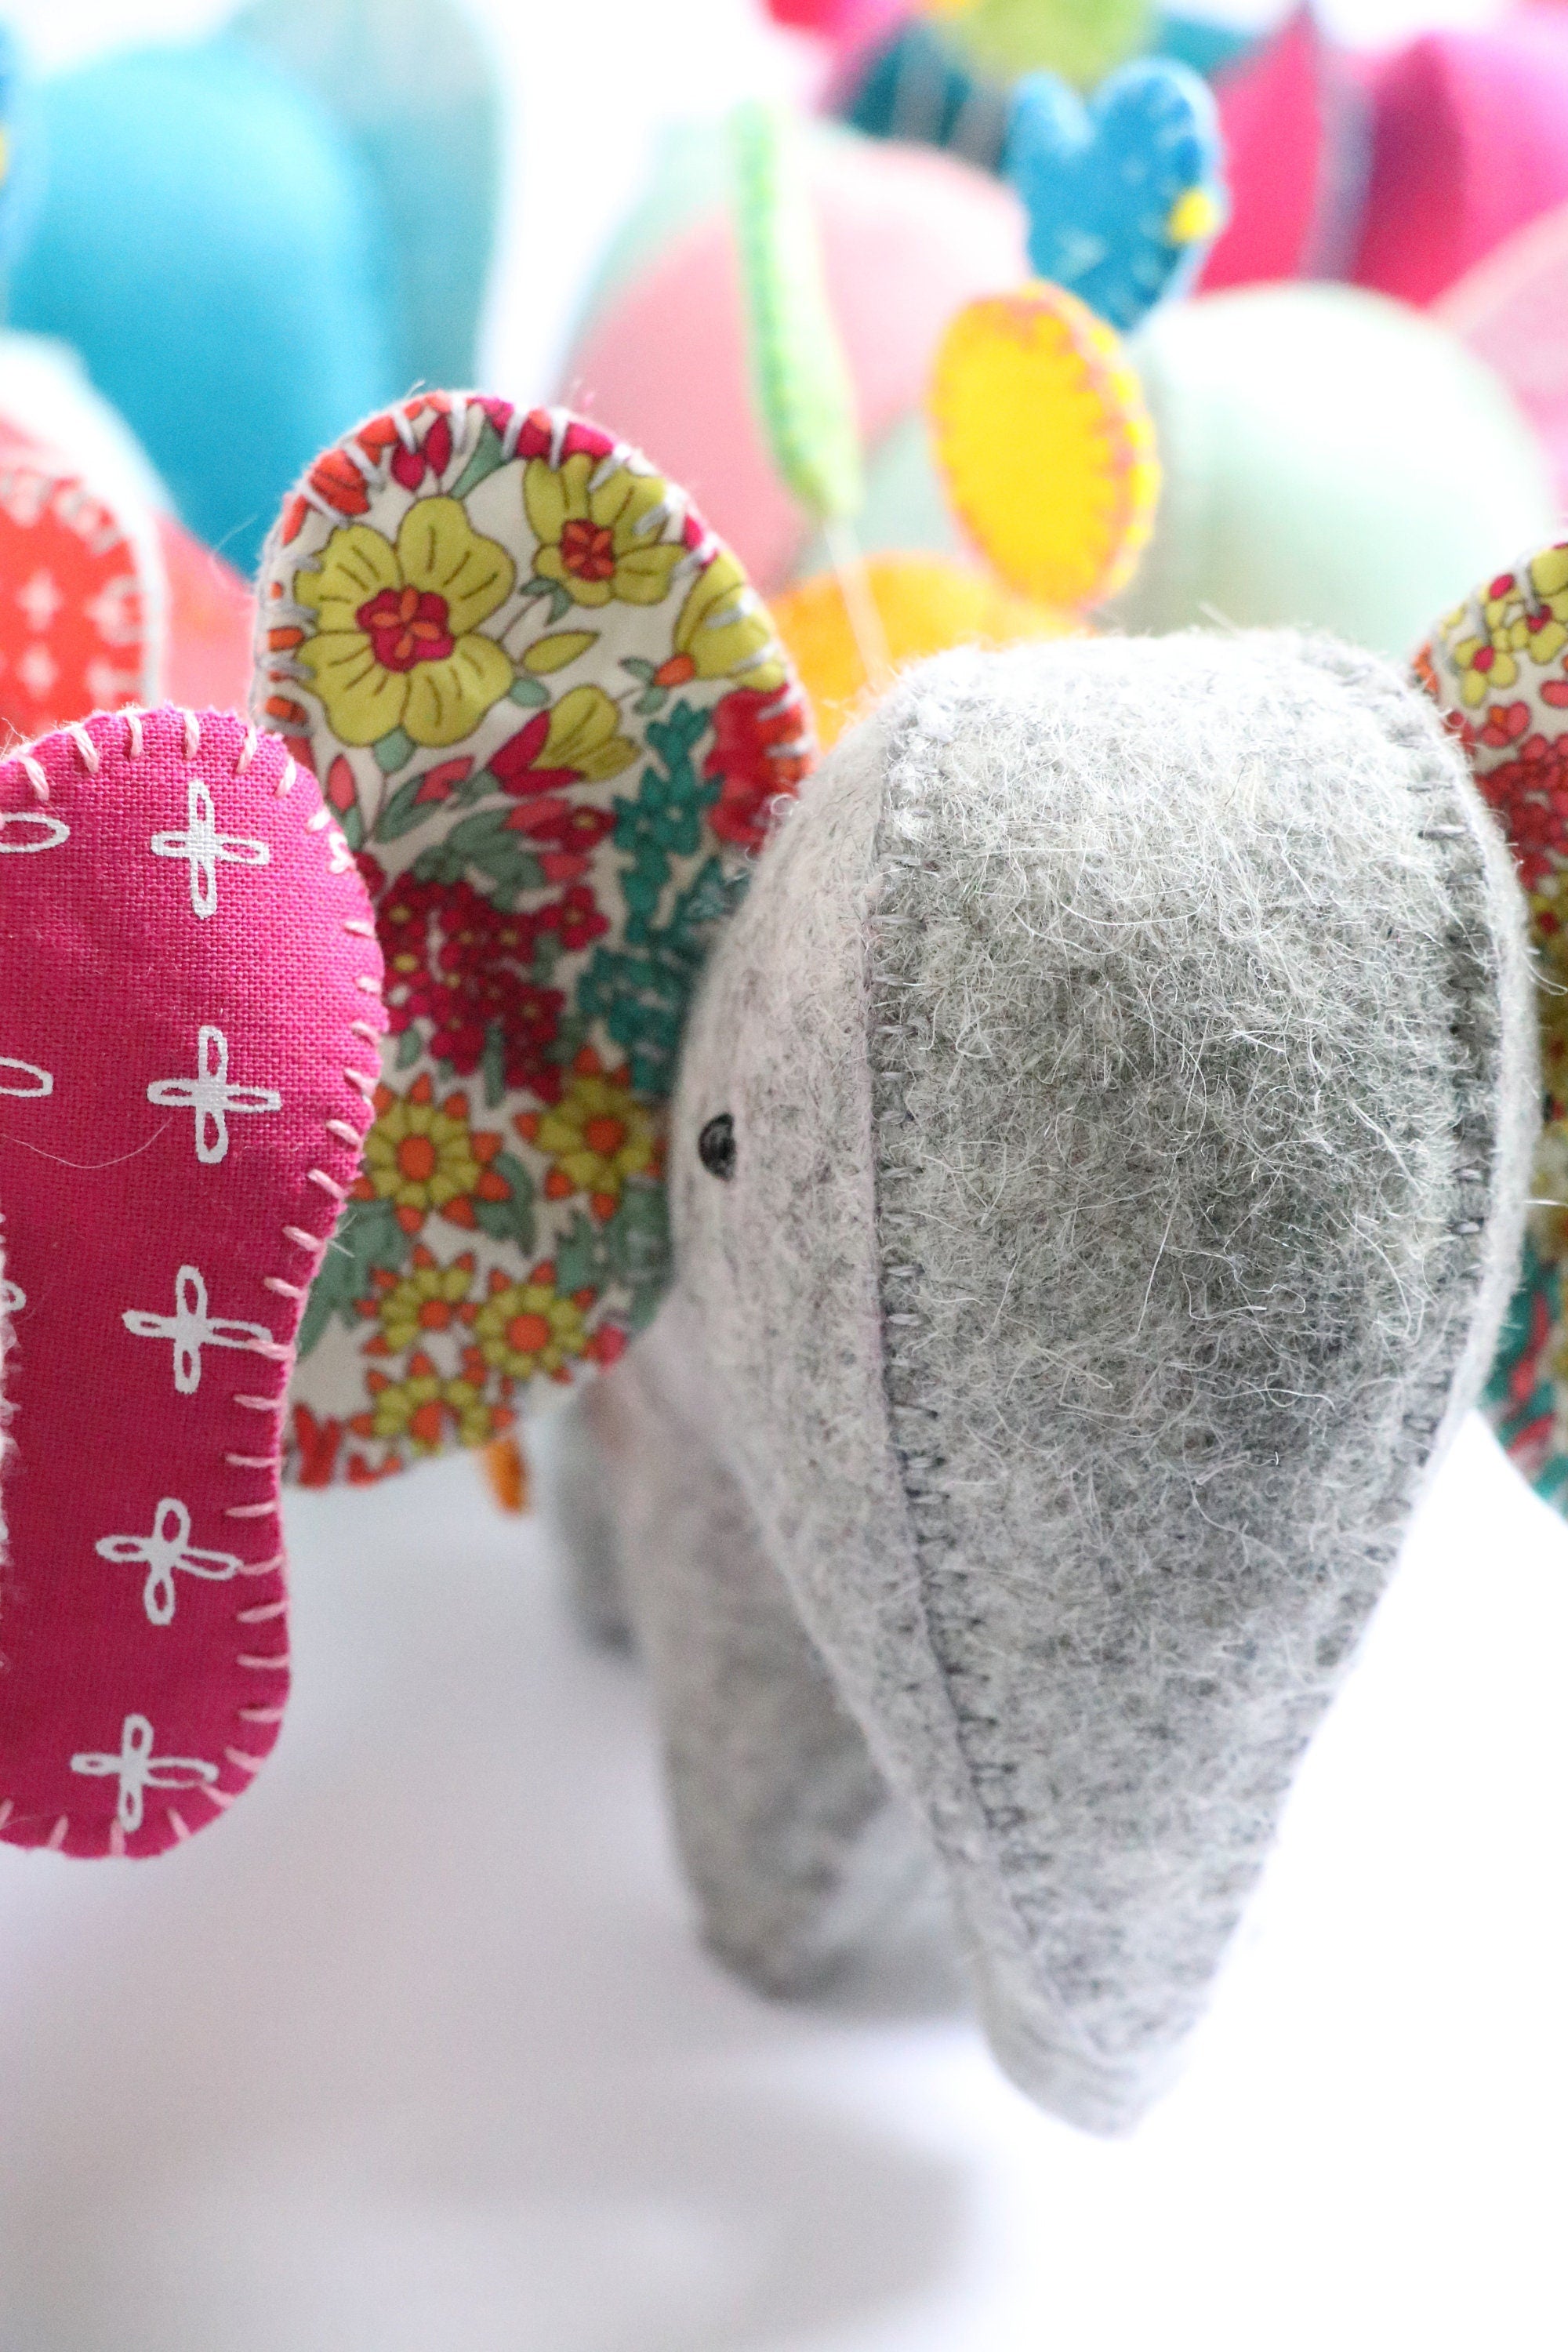 Elephant Caddy: Elephant pin cushion, needleminder sewing pattern